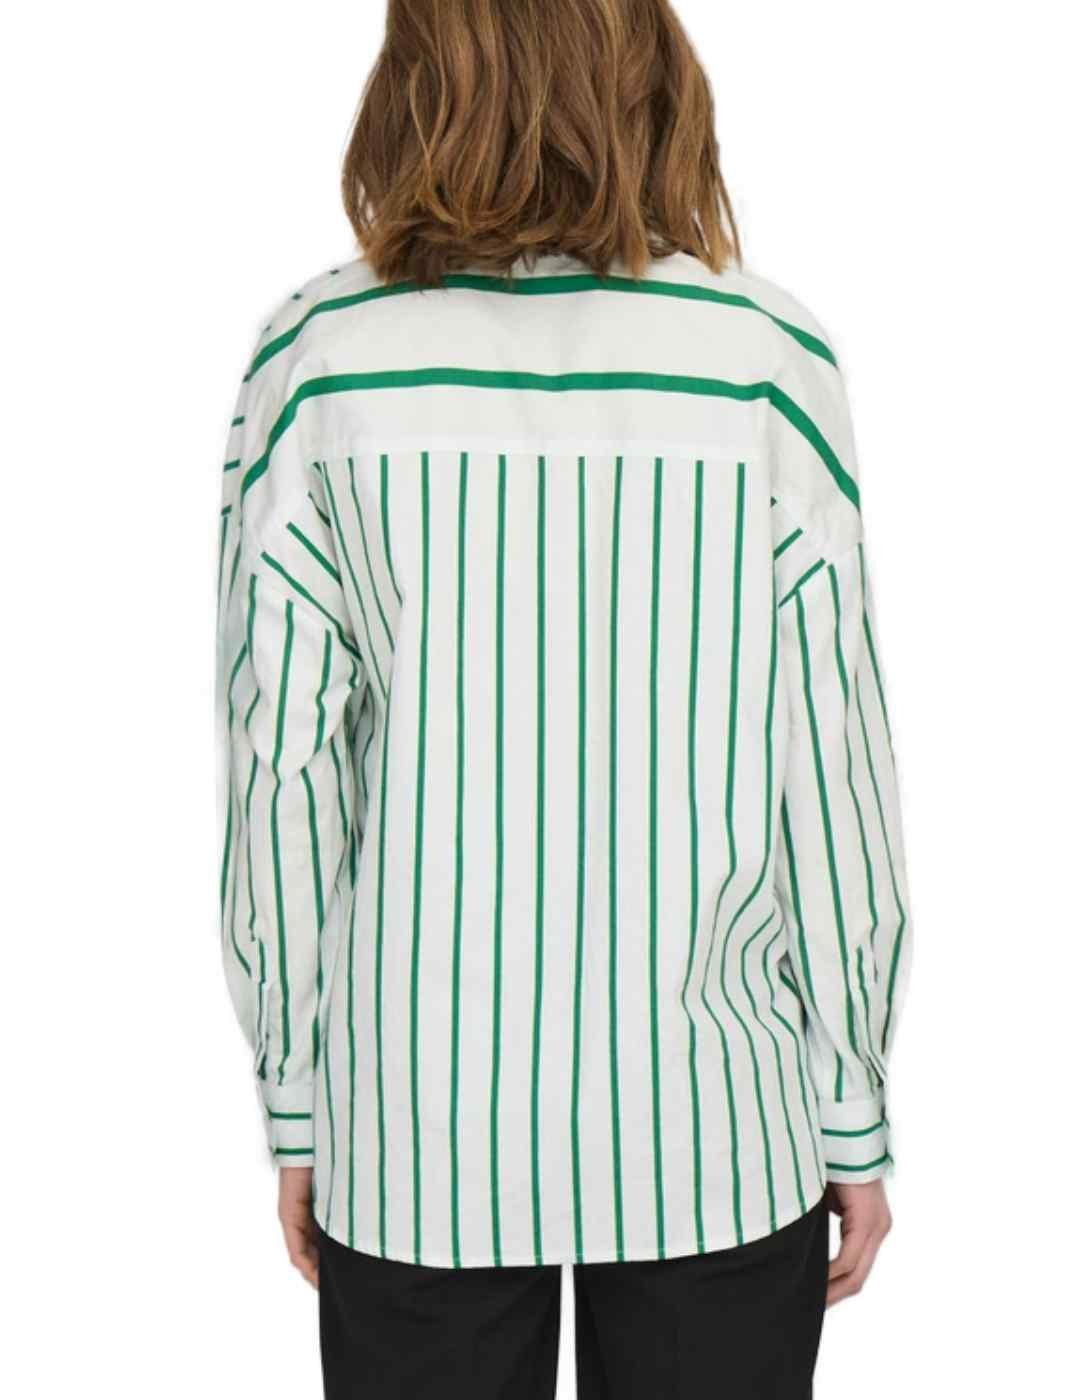 Camisa Only Nina blanca rayas verdes asimetricas para mujer